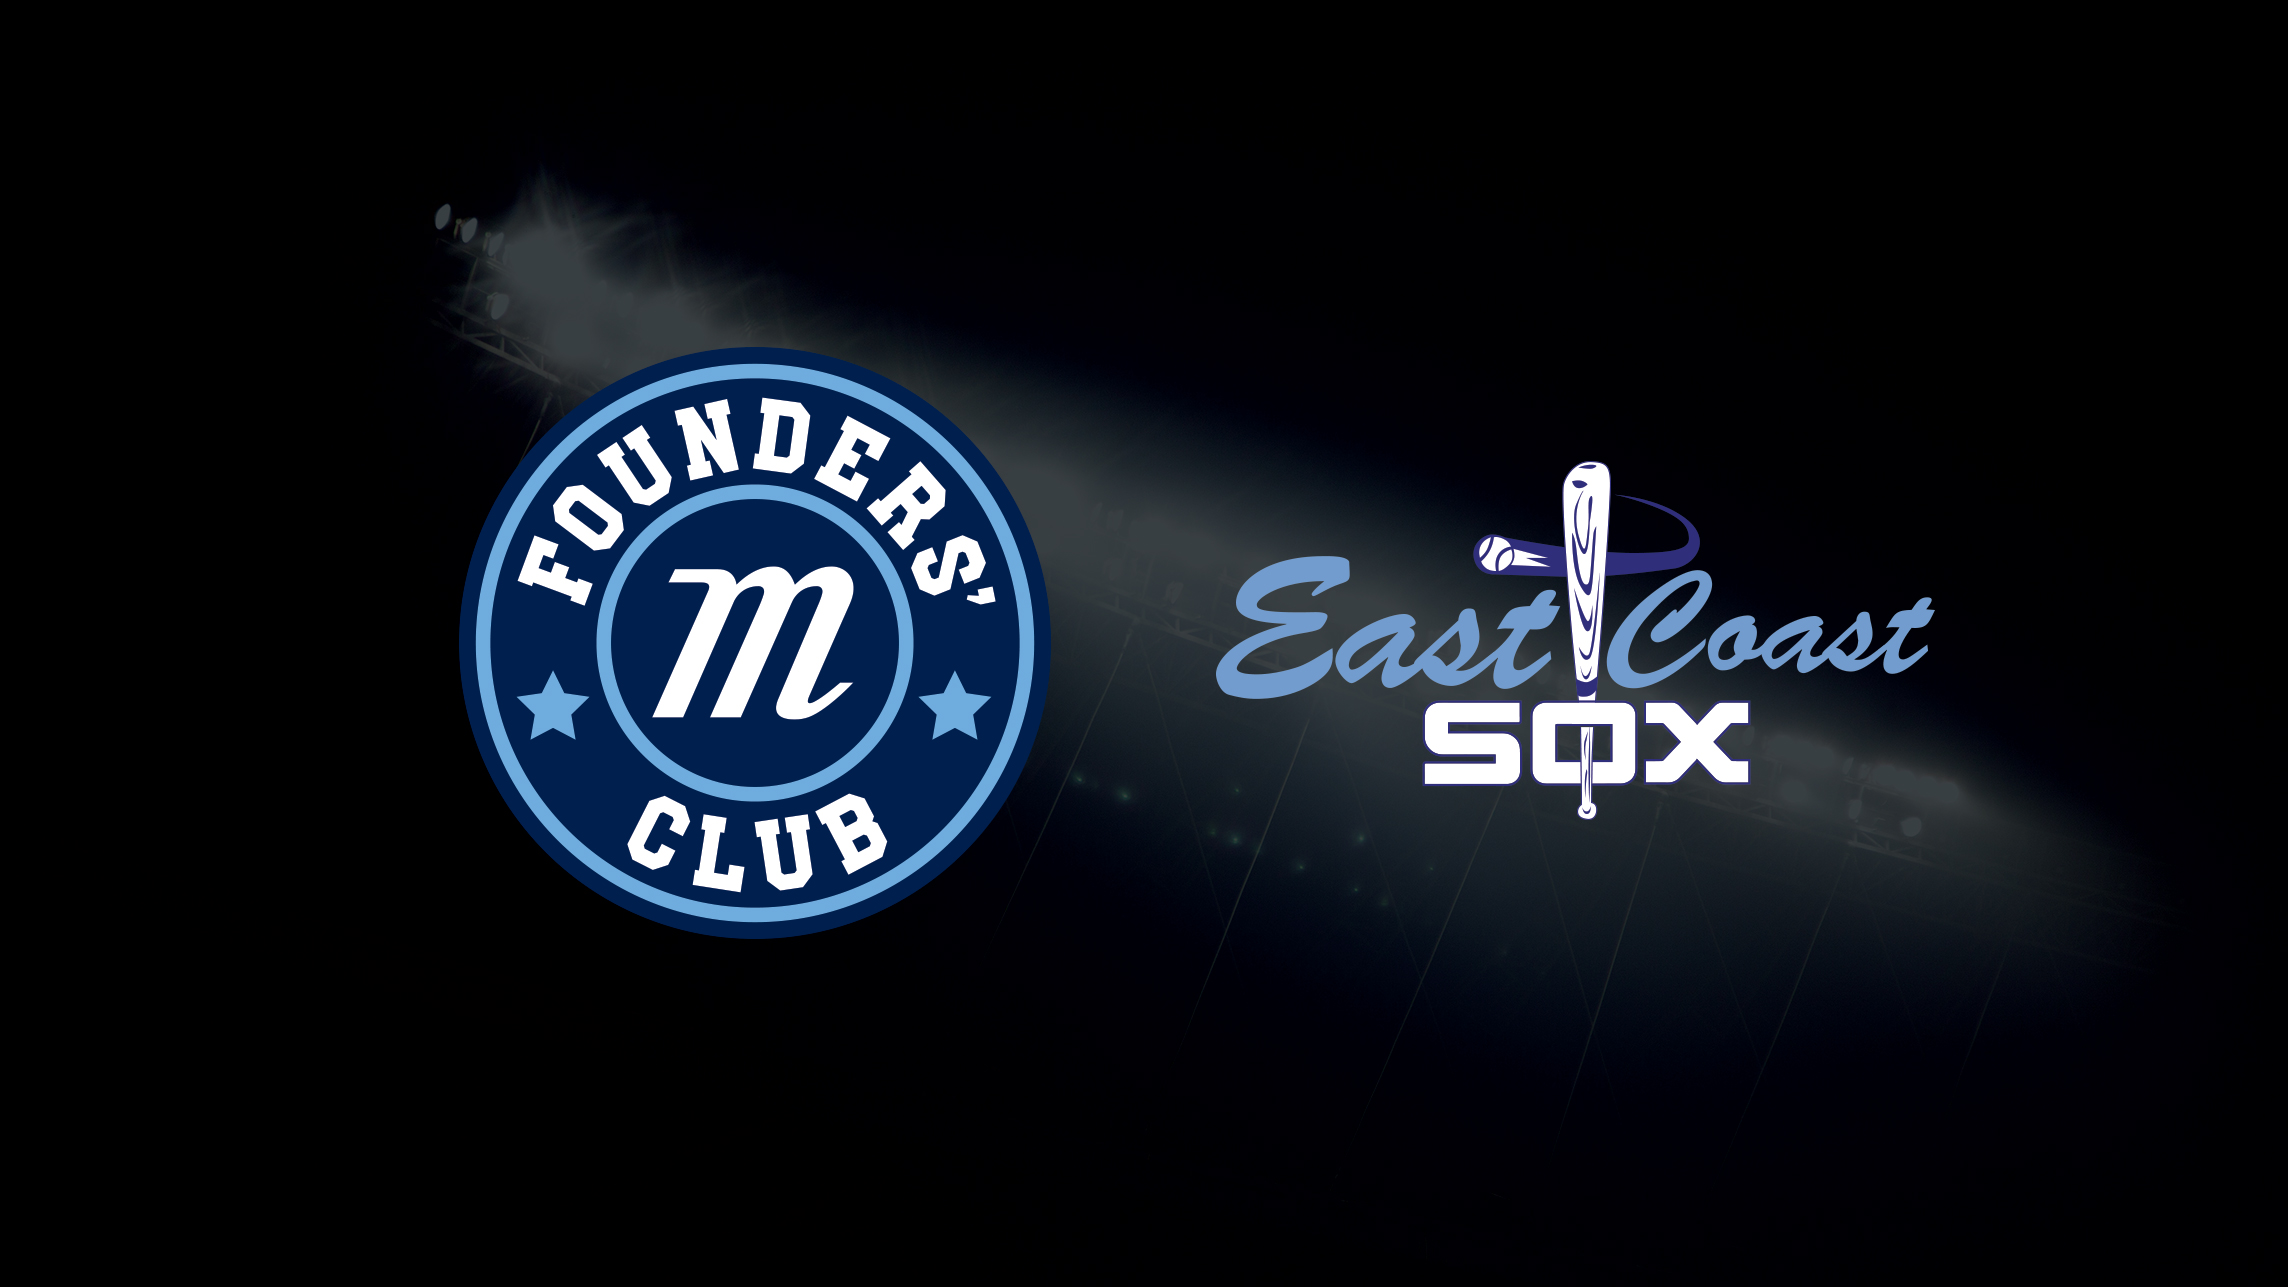 Pro Shop - East Coast Sox Baseball